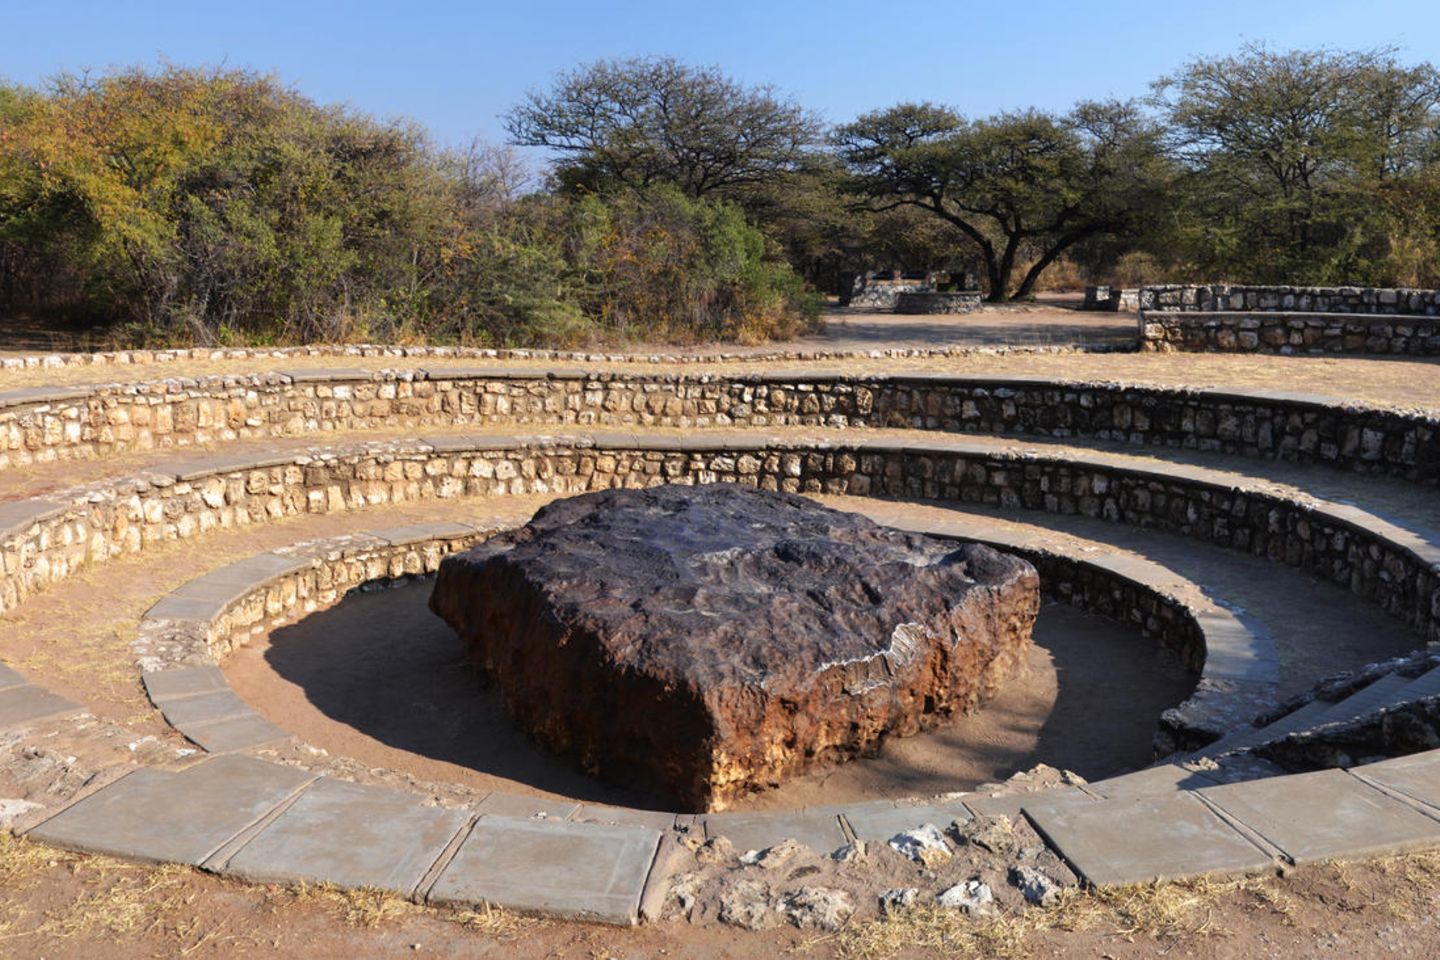 Der Hoba-Meteorit in Namibia ist mit einem geschätzten Gewicht von bis zu 60 Tonnen der bislang größte auf der Erde entdeckte Meteorit. Er traf die Erde vor etwa 80.000 Jahren – und liegt immer noch an seiner ursprünglichen Position